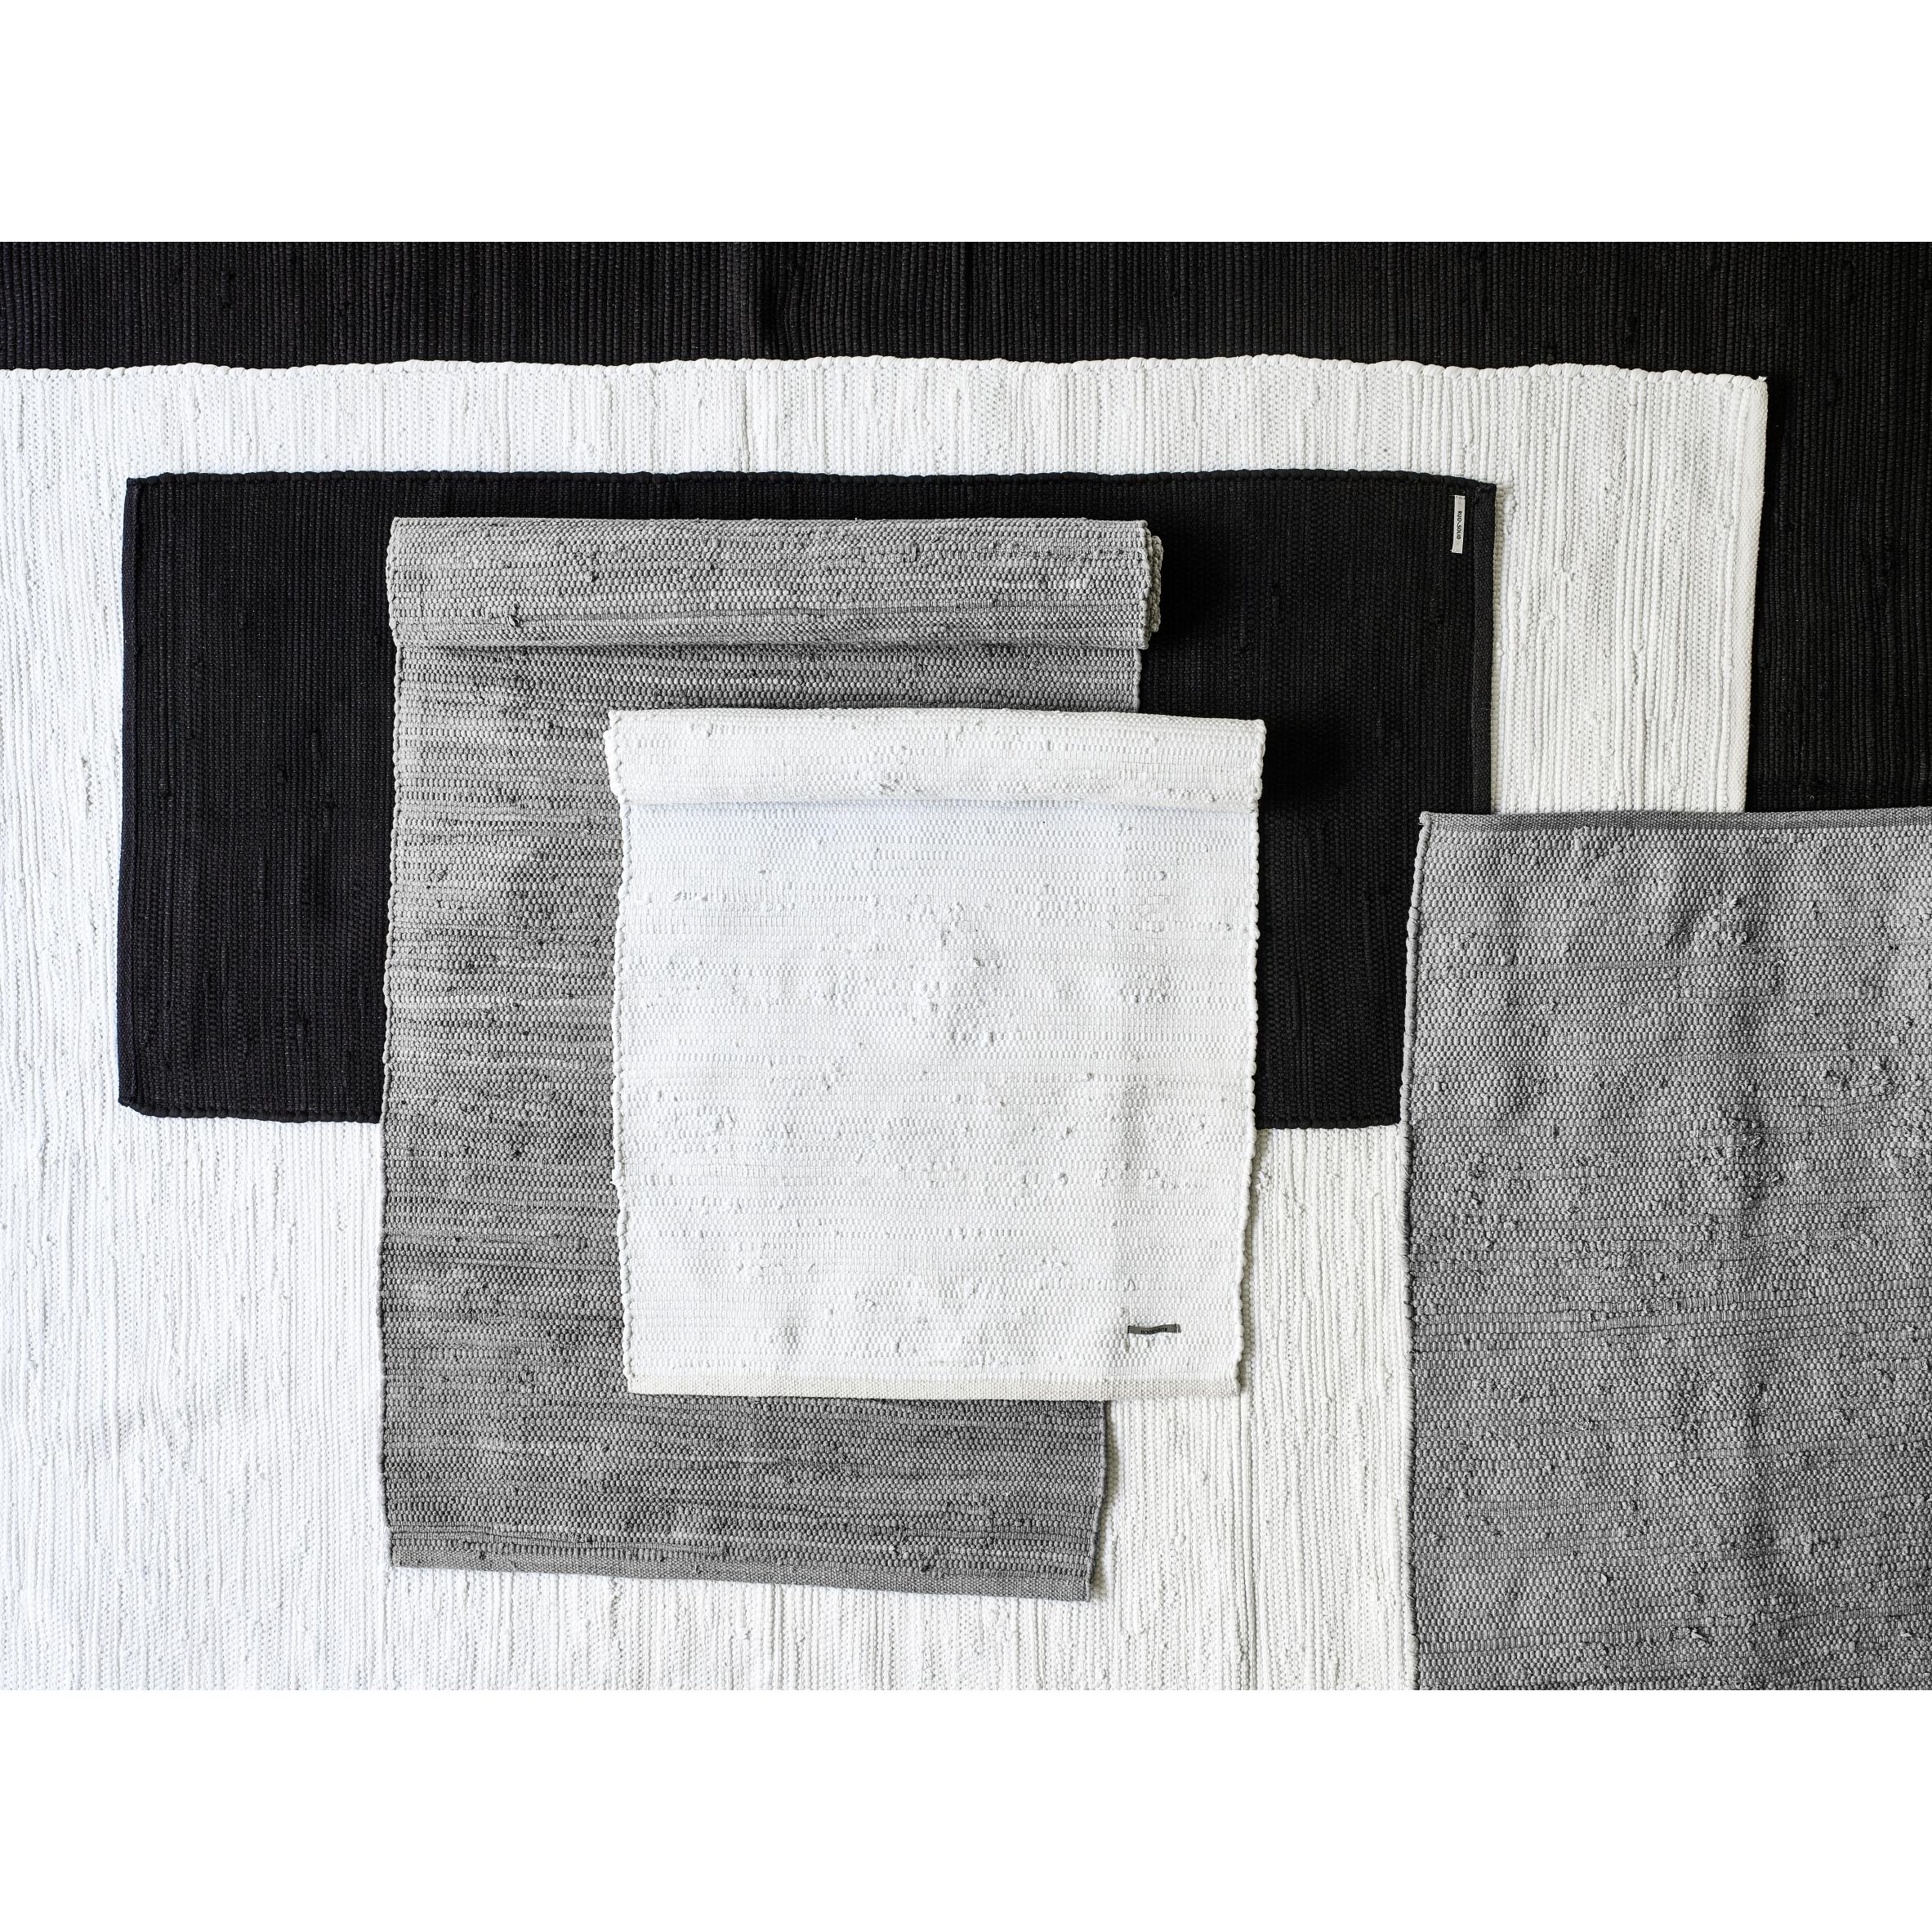 Tappeto di cotone solido grigio chiaro, 75 x 300 cm